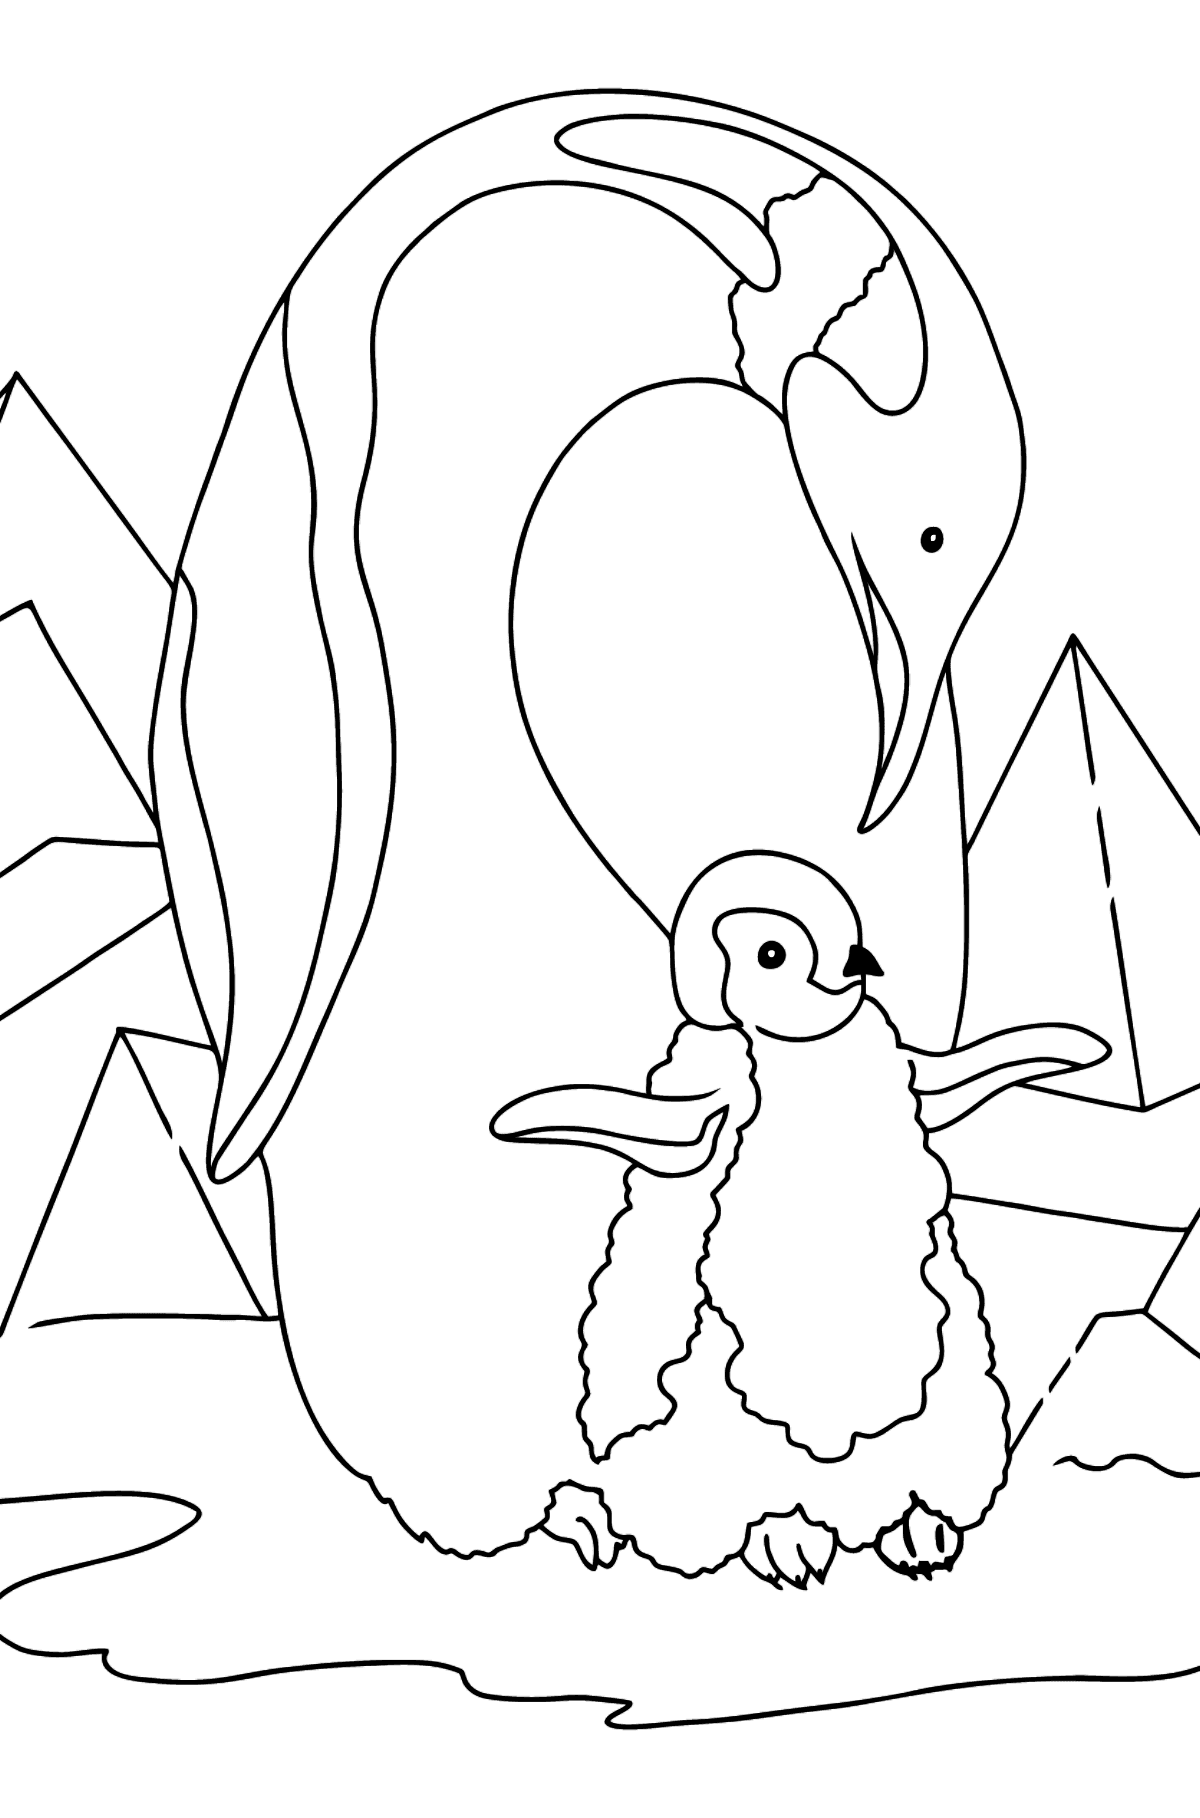 Desenho de pinguim para colorir - Imagens para Colorir para Crianças